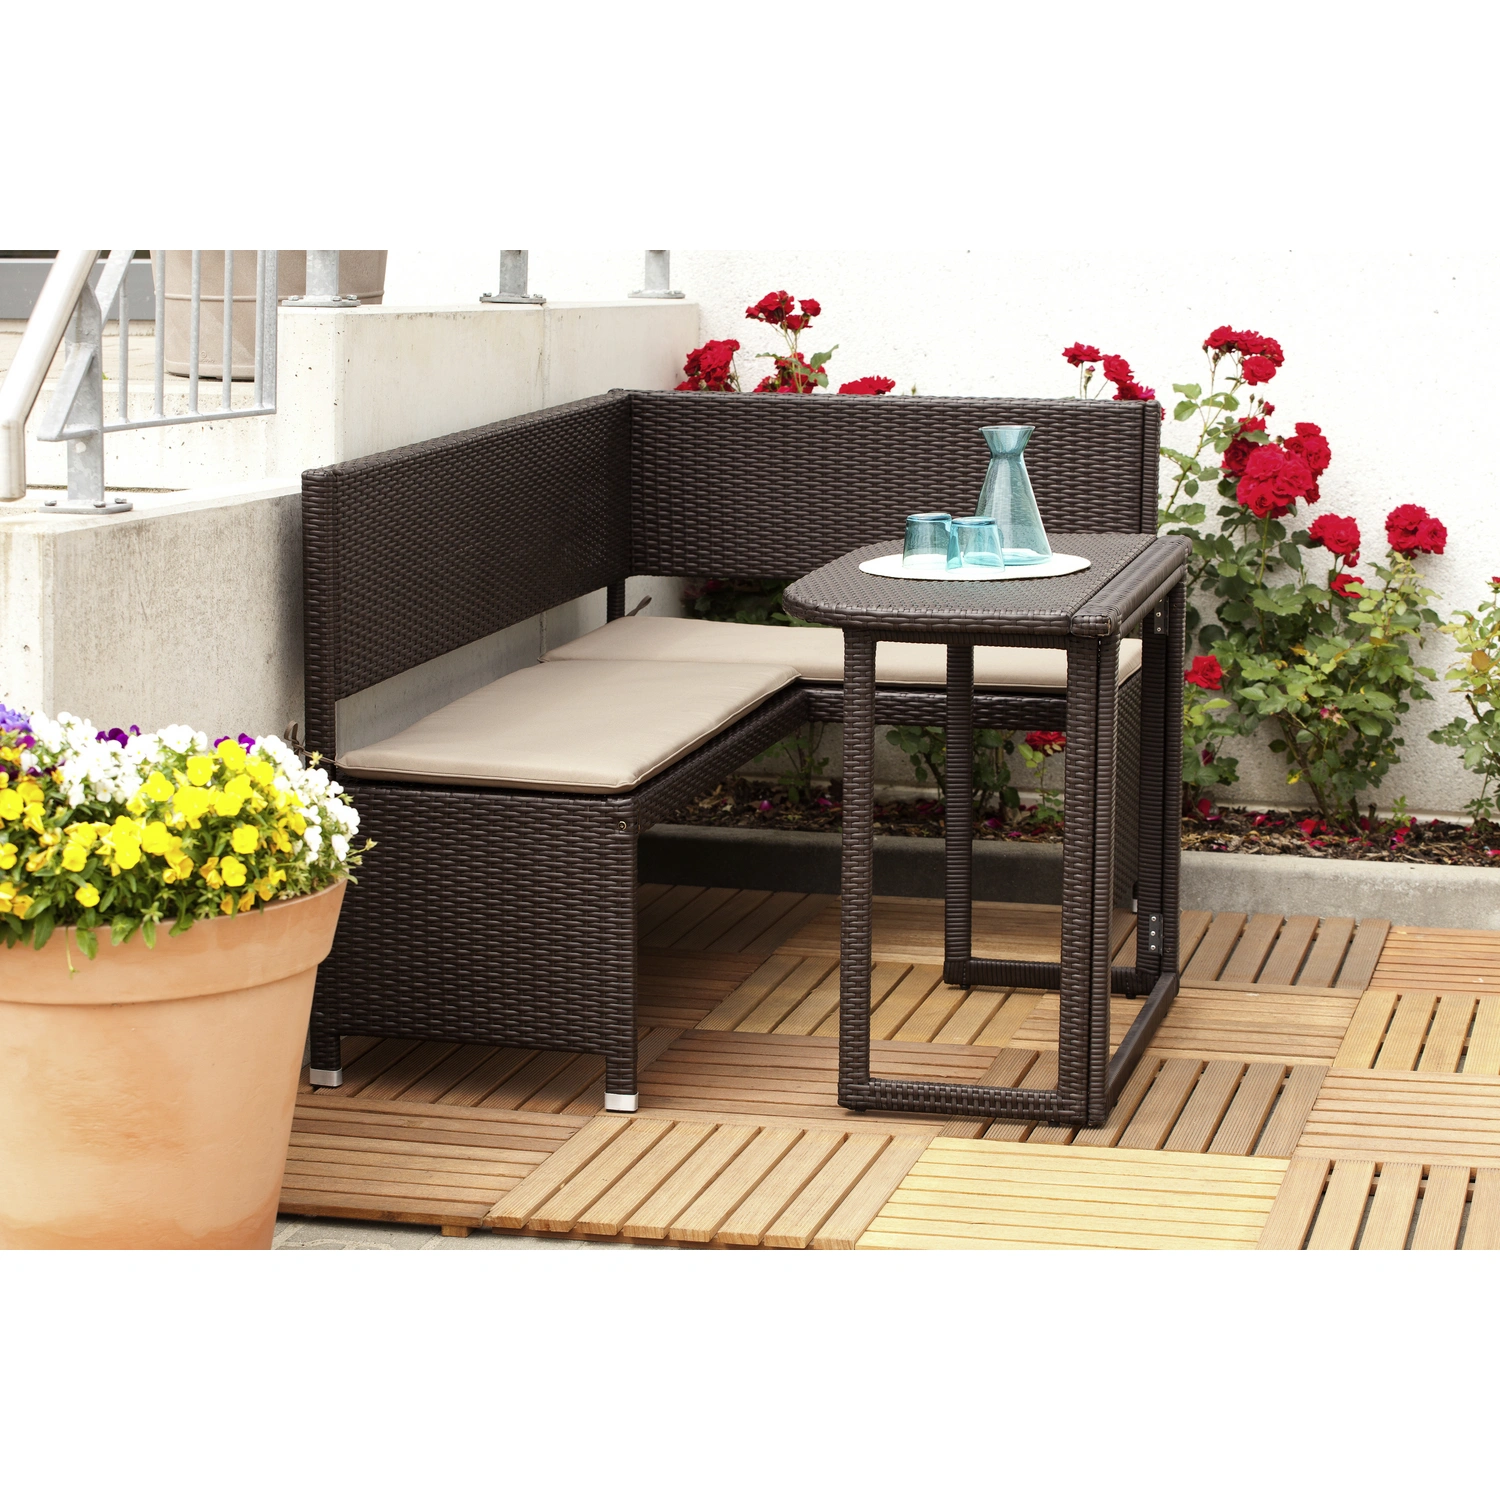 MERXX Sitzplätze, Auflagen inkl. 3 Gartenmöbelset, Stahl/Kunststoff,